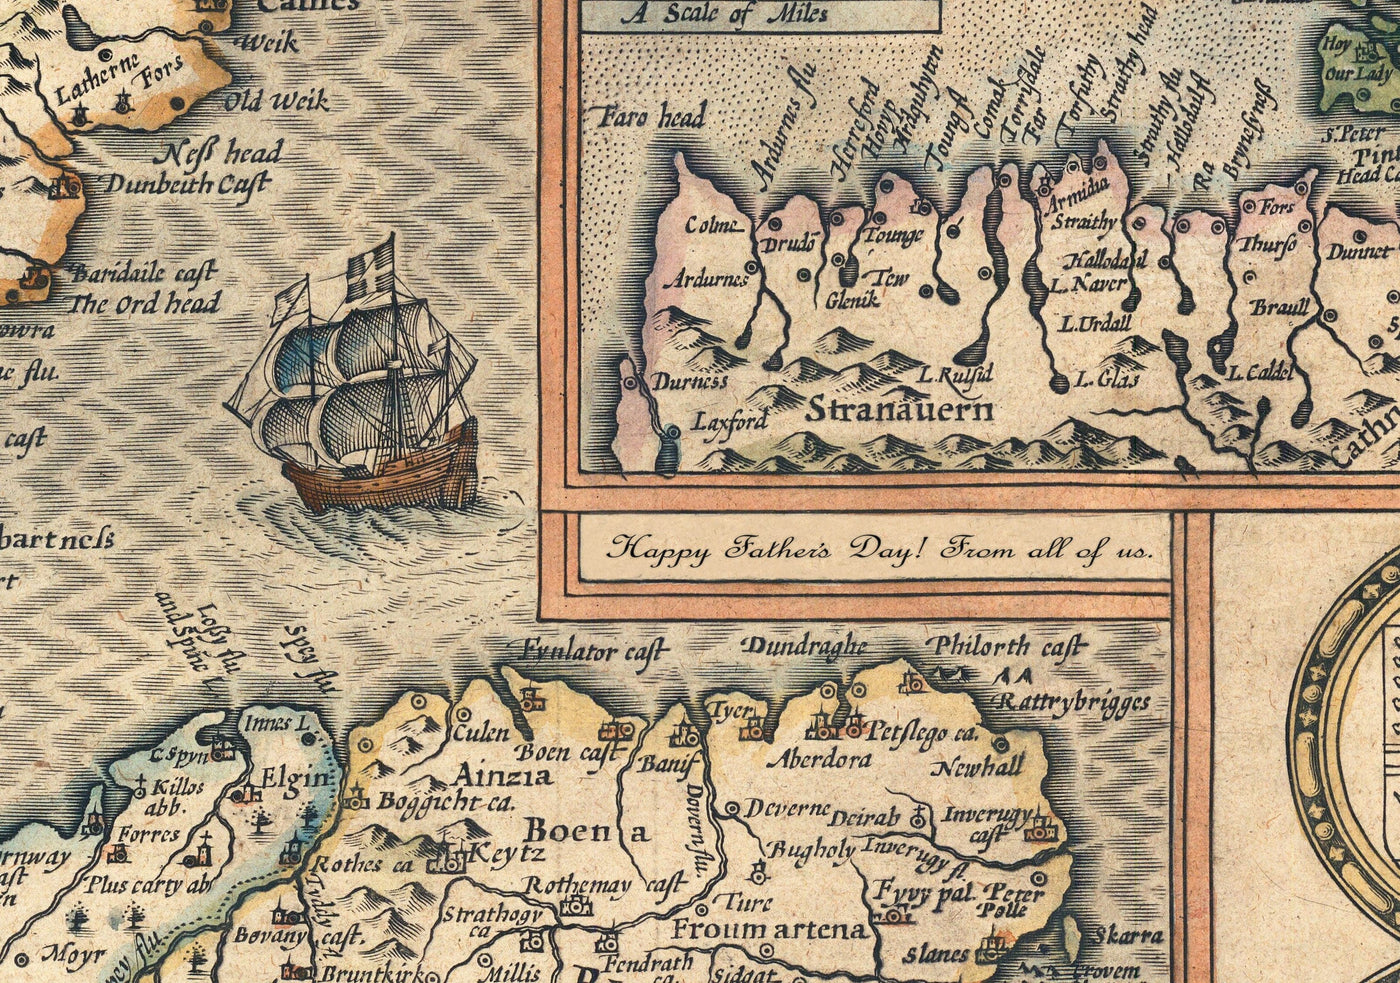 Alte Karte von Denbighshire Wales 1611 von John Speed ​​- Denbigh, Wrexham, Llandudno, Herzele